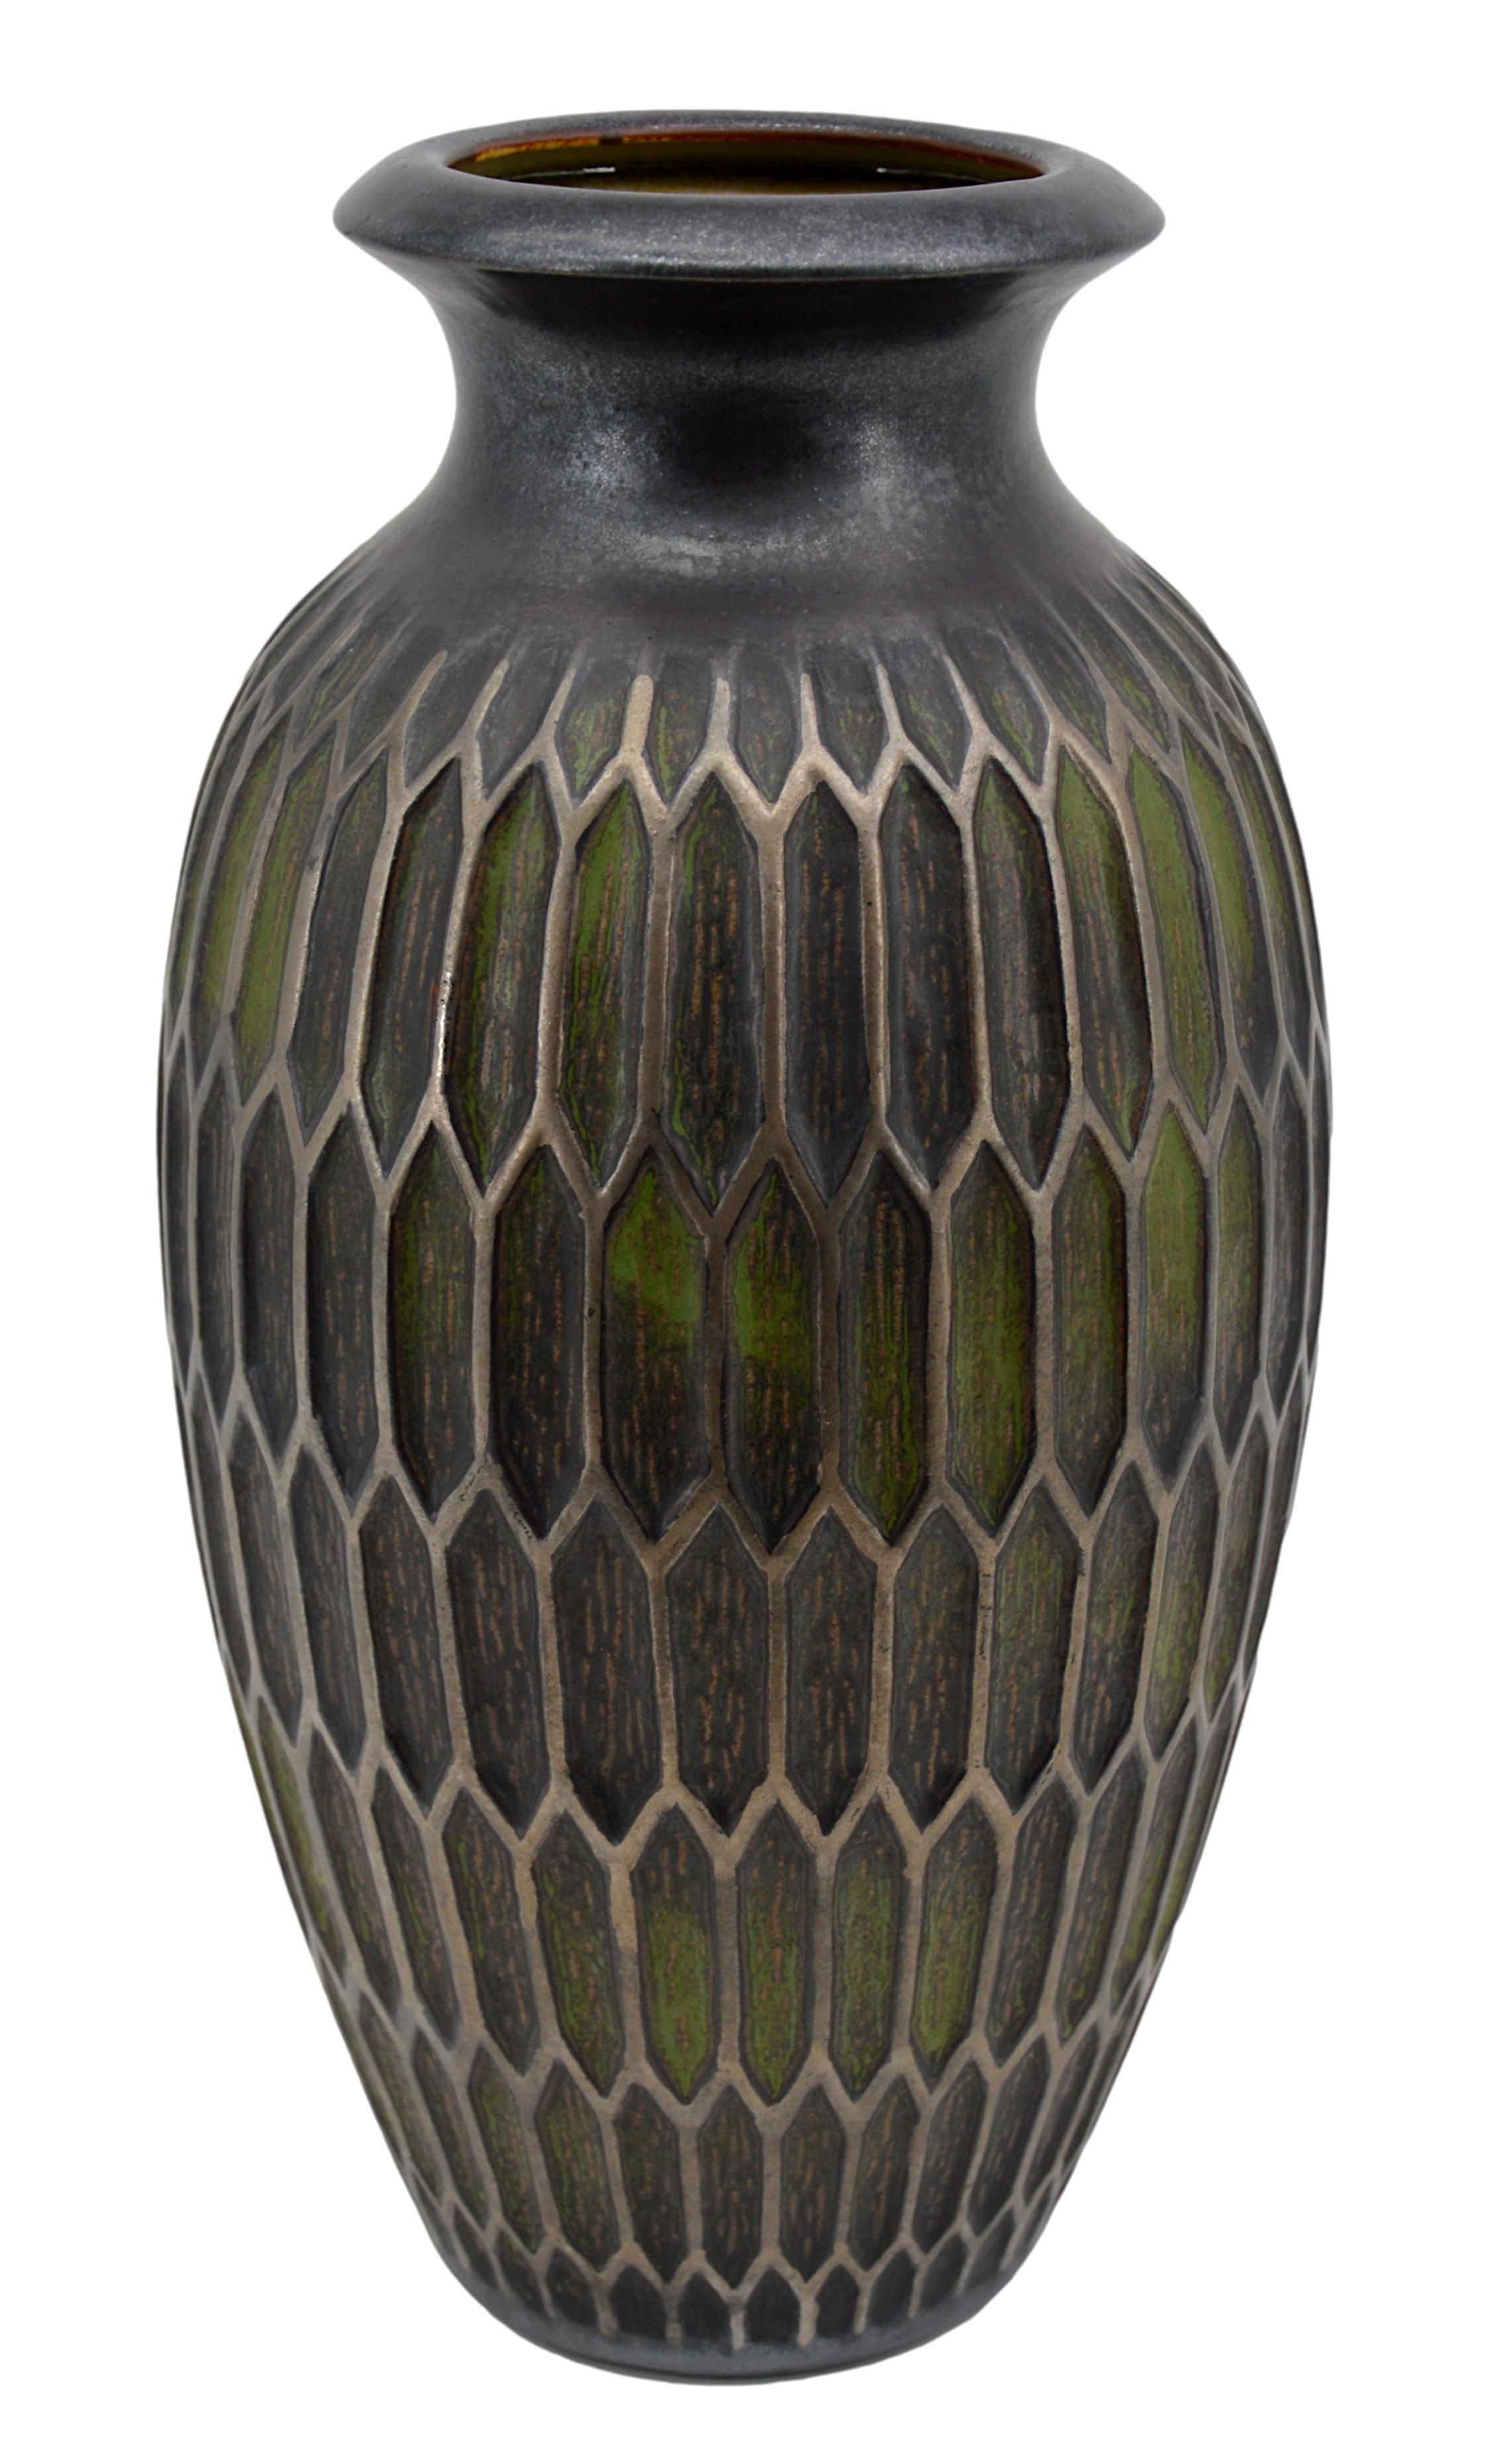 Französische Art-déco-Vase von Joseph Mougin (1876-1961), Nancy, Frankreich, Ende der 1920er Jahre. Modell von Joseph Mougin mit dem Namen 